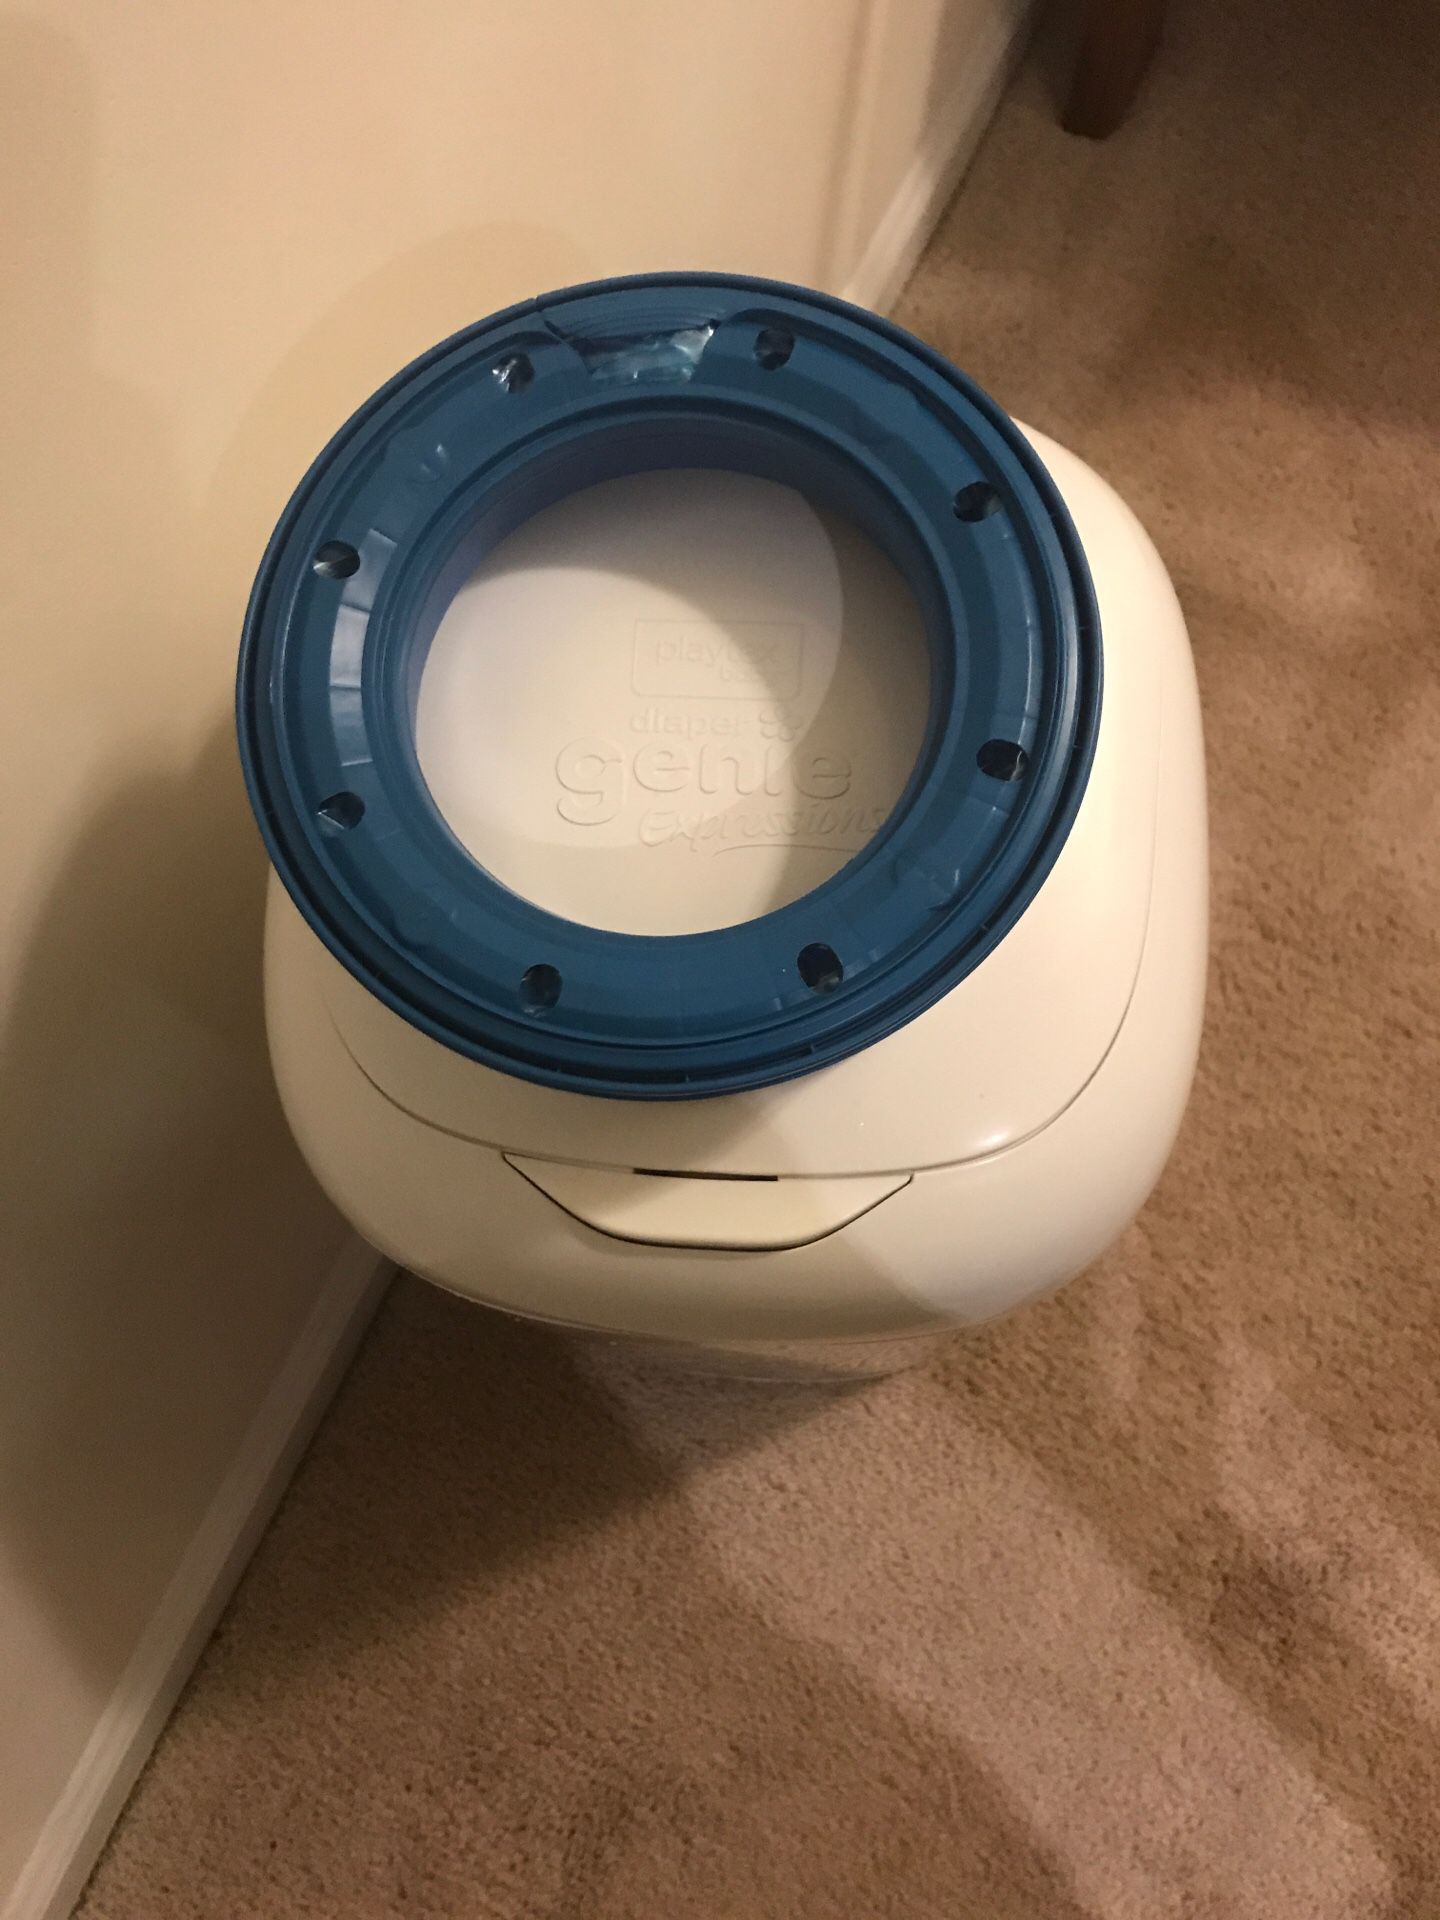 Diaper pail - new open box